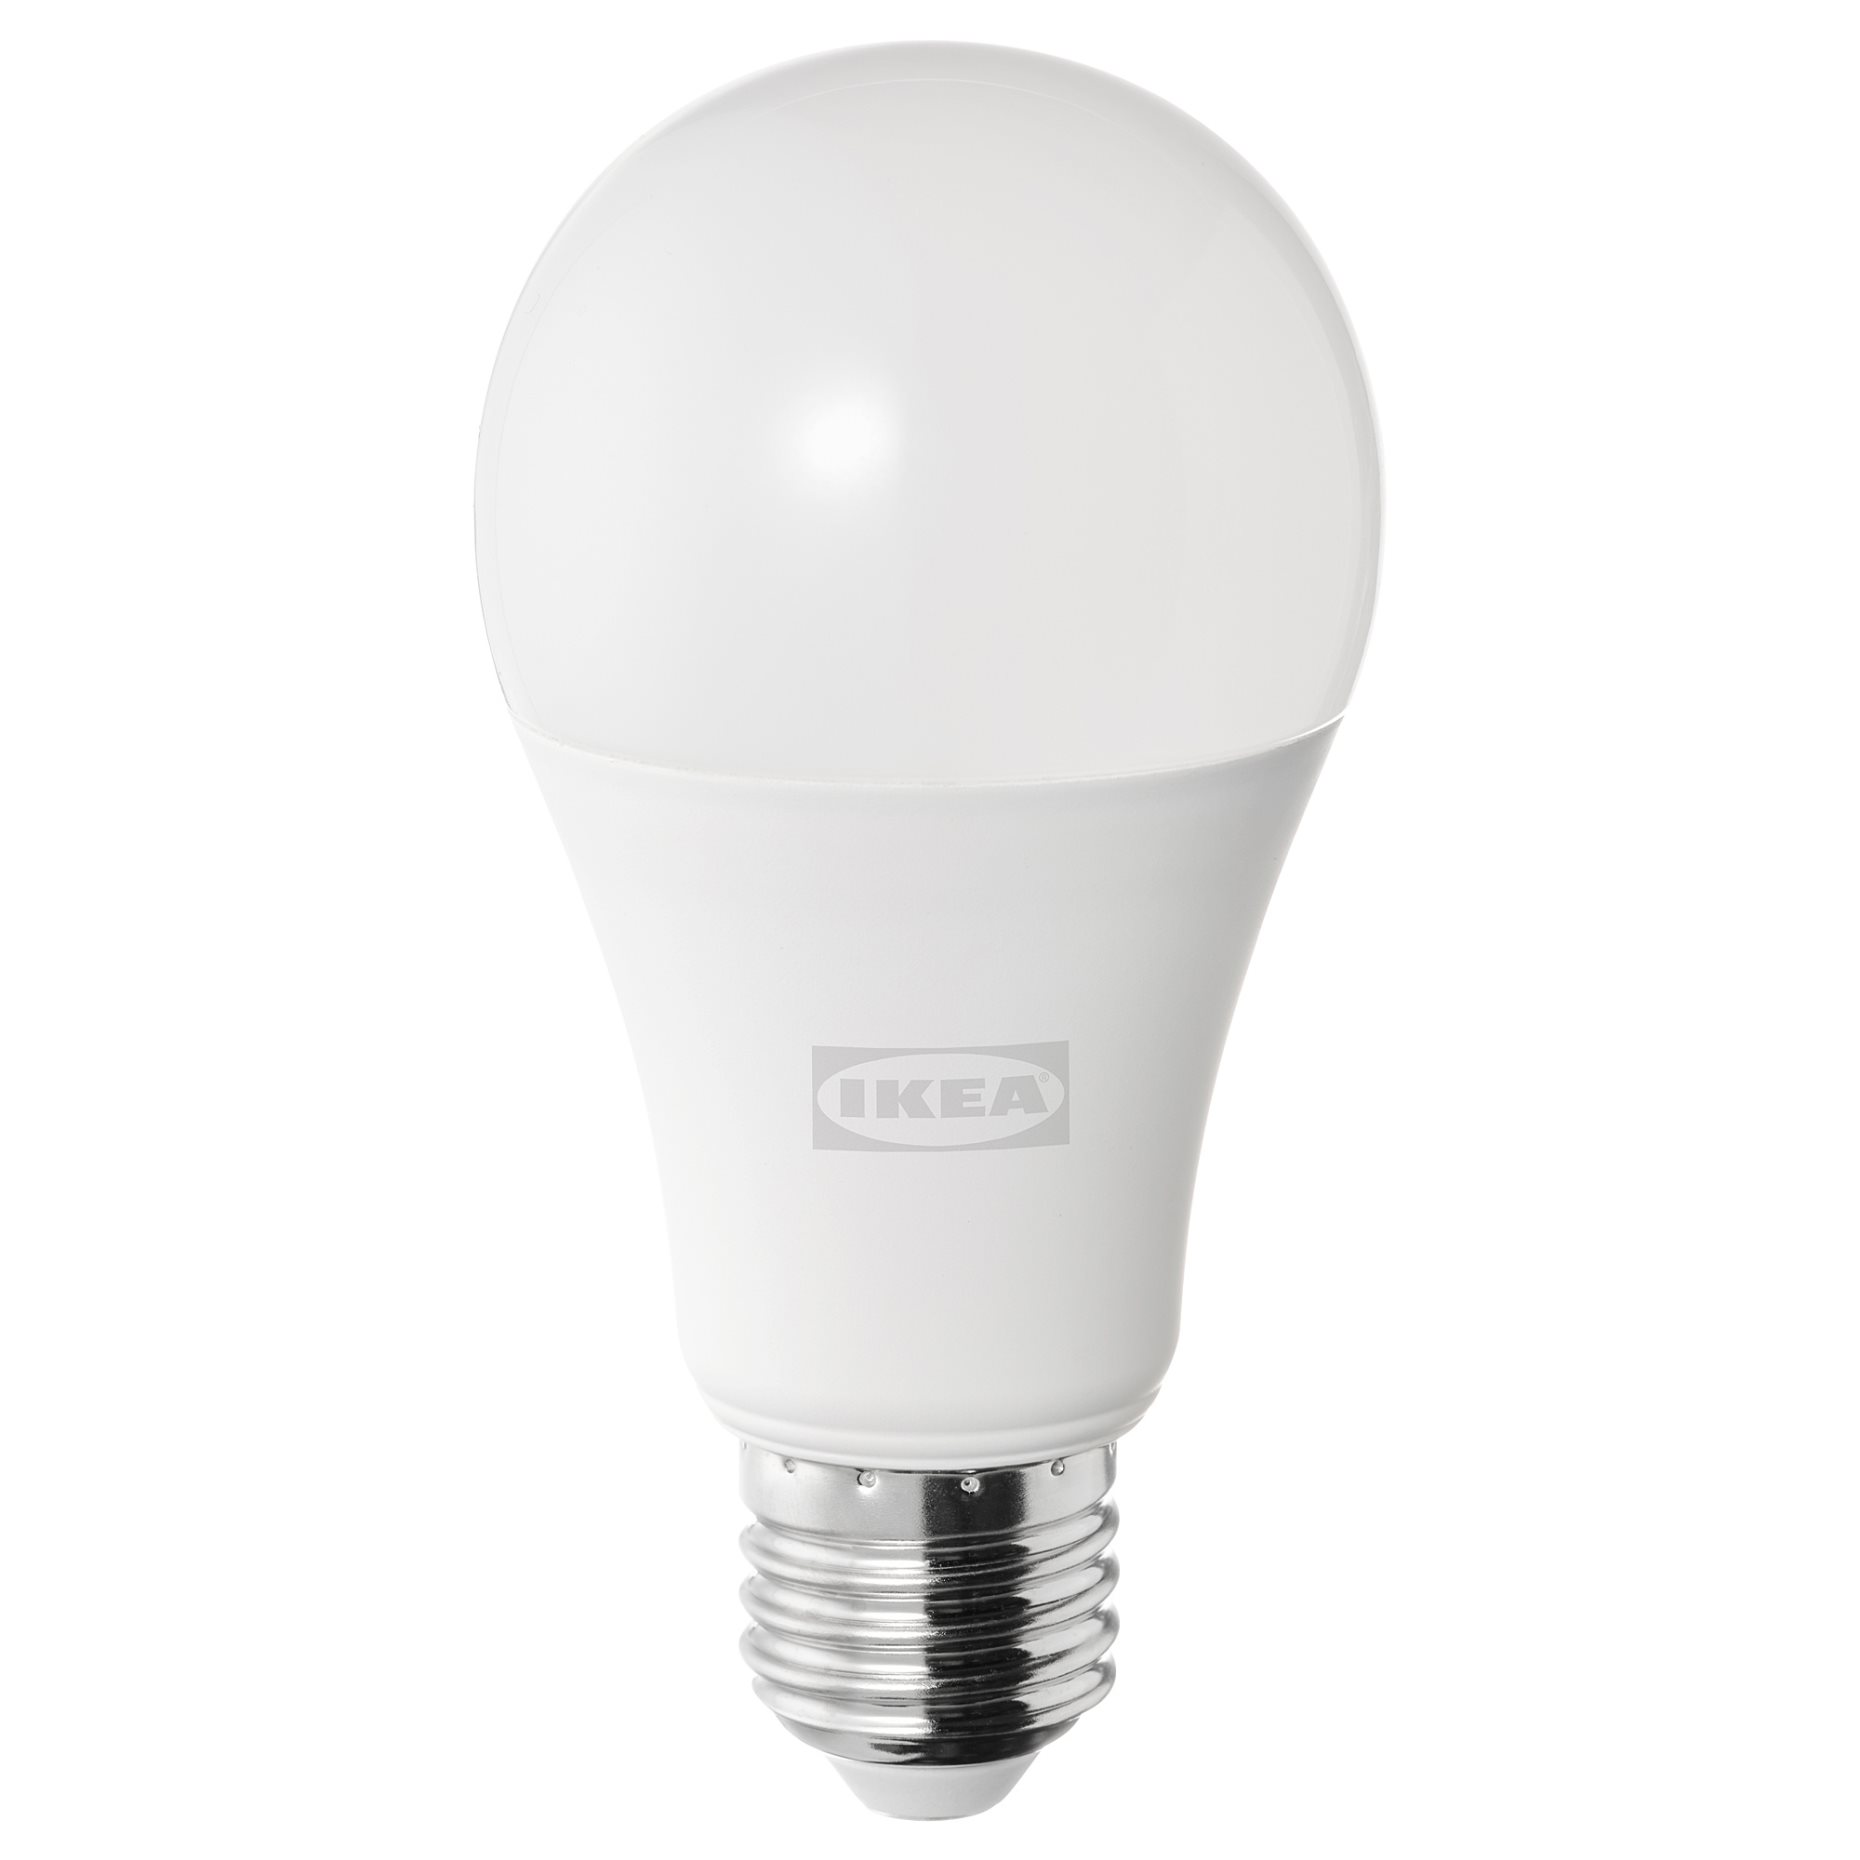 SOLHETTA, LED bulb E27 1521 lumen dimmable/globe,, 205.099.93